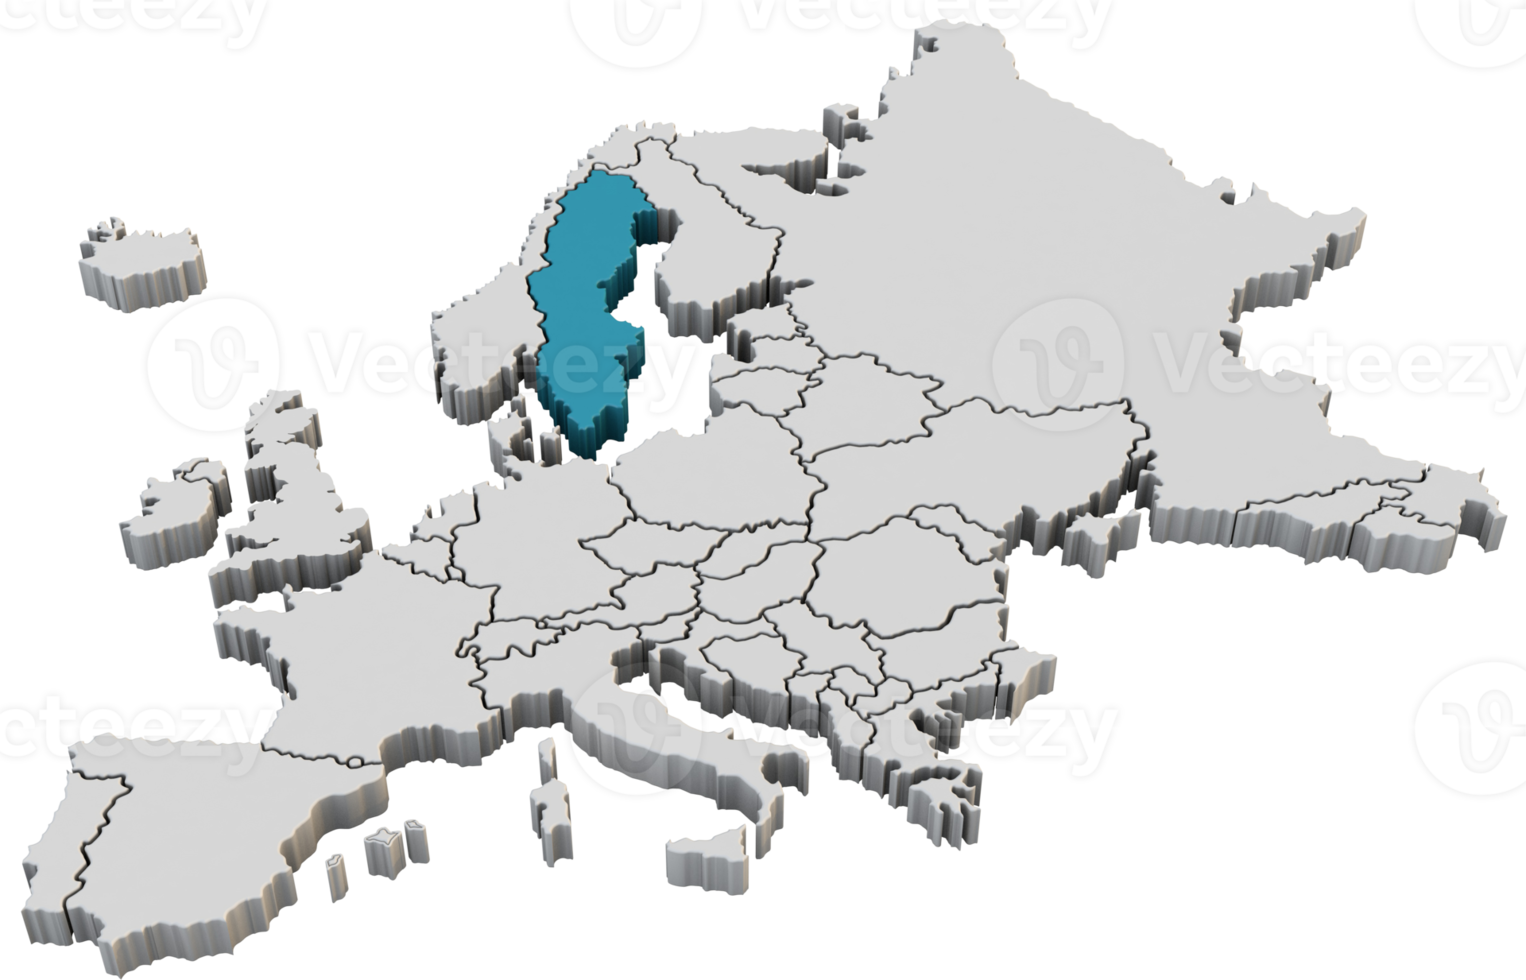 Europa mapa 3d render isolado com azul Suécia um país europeu png